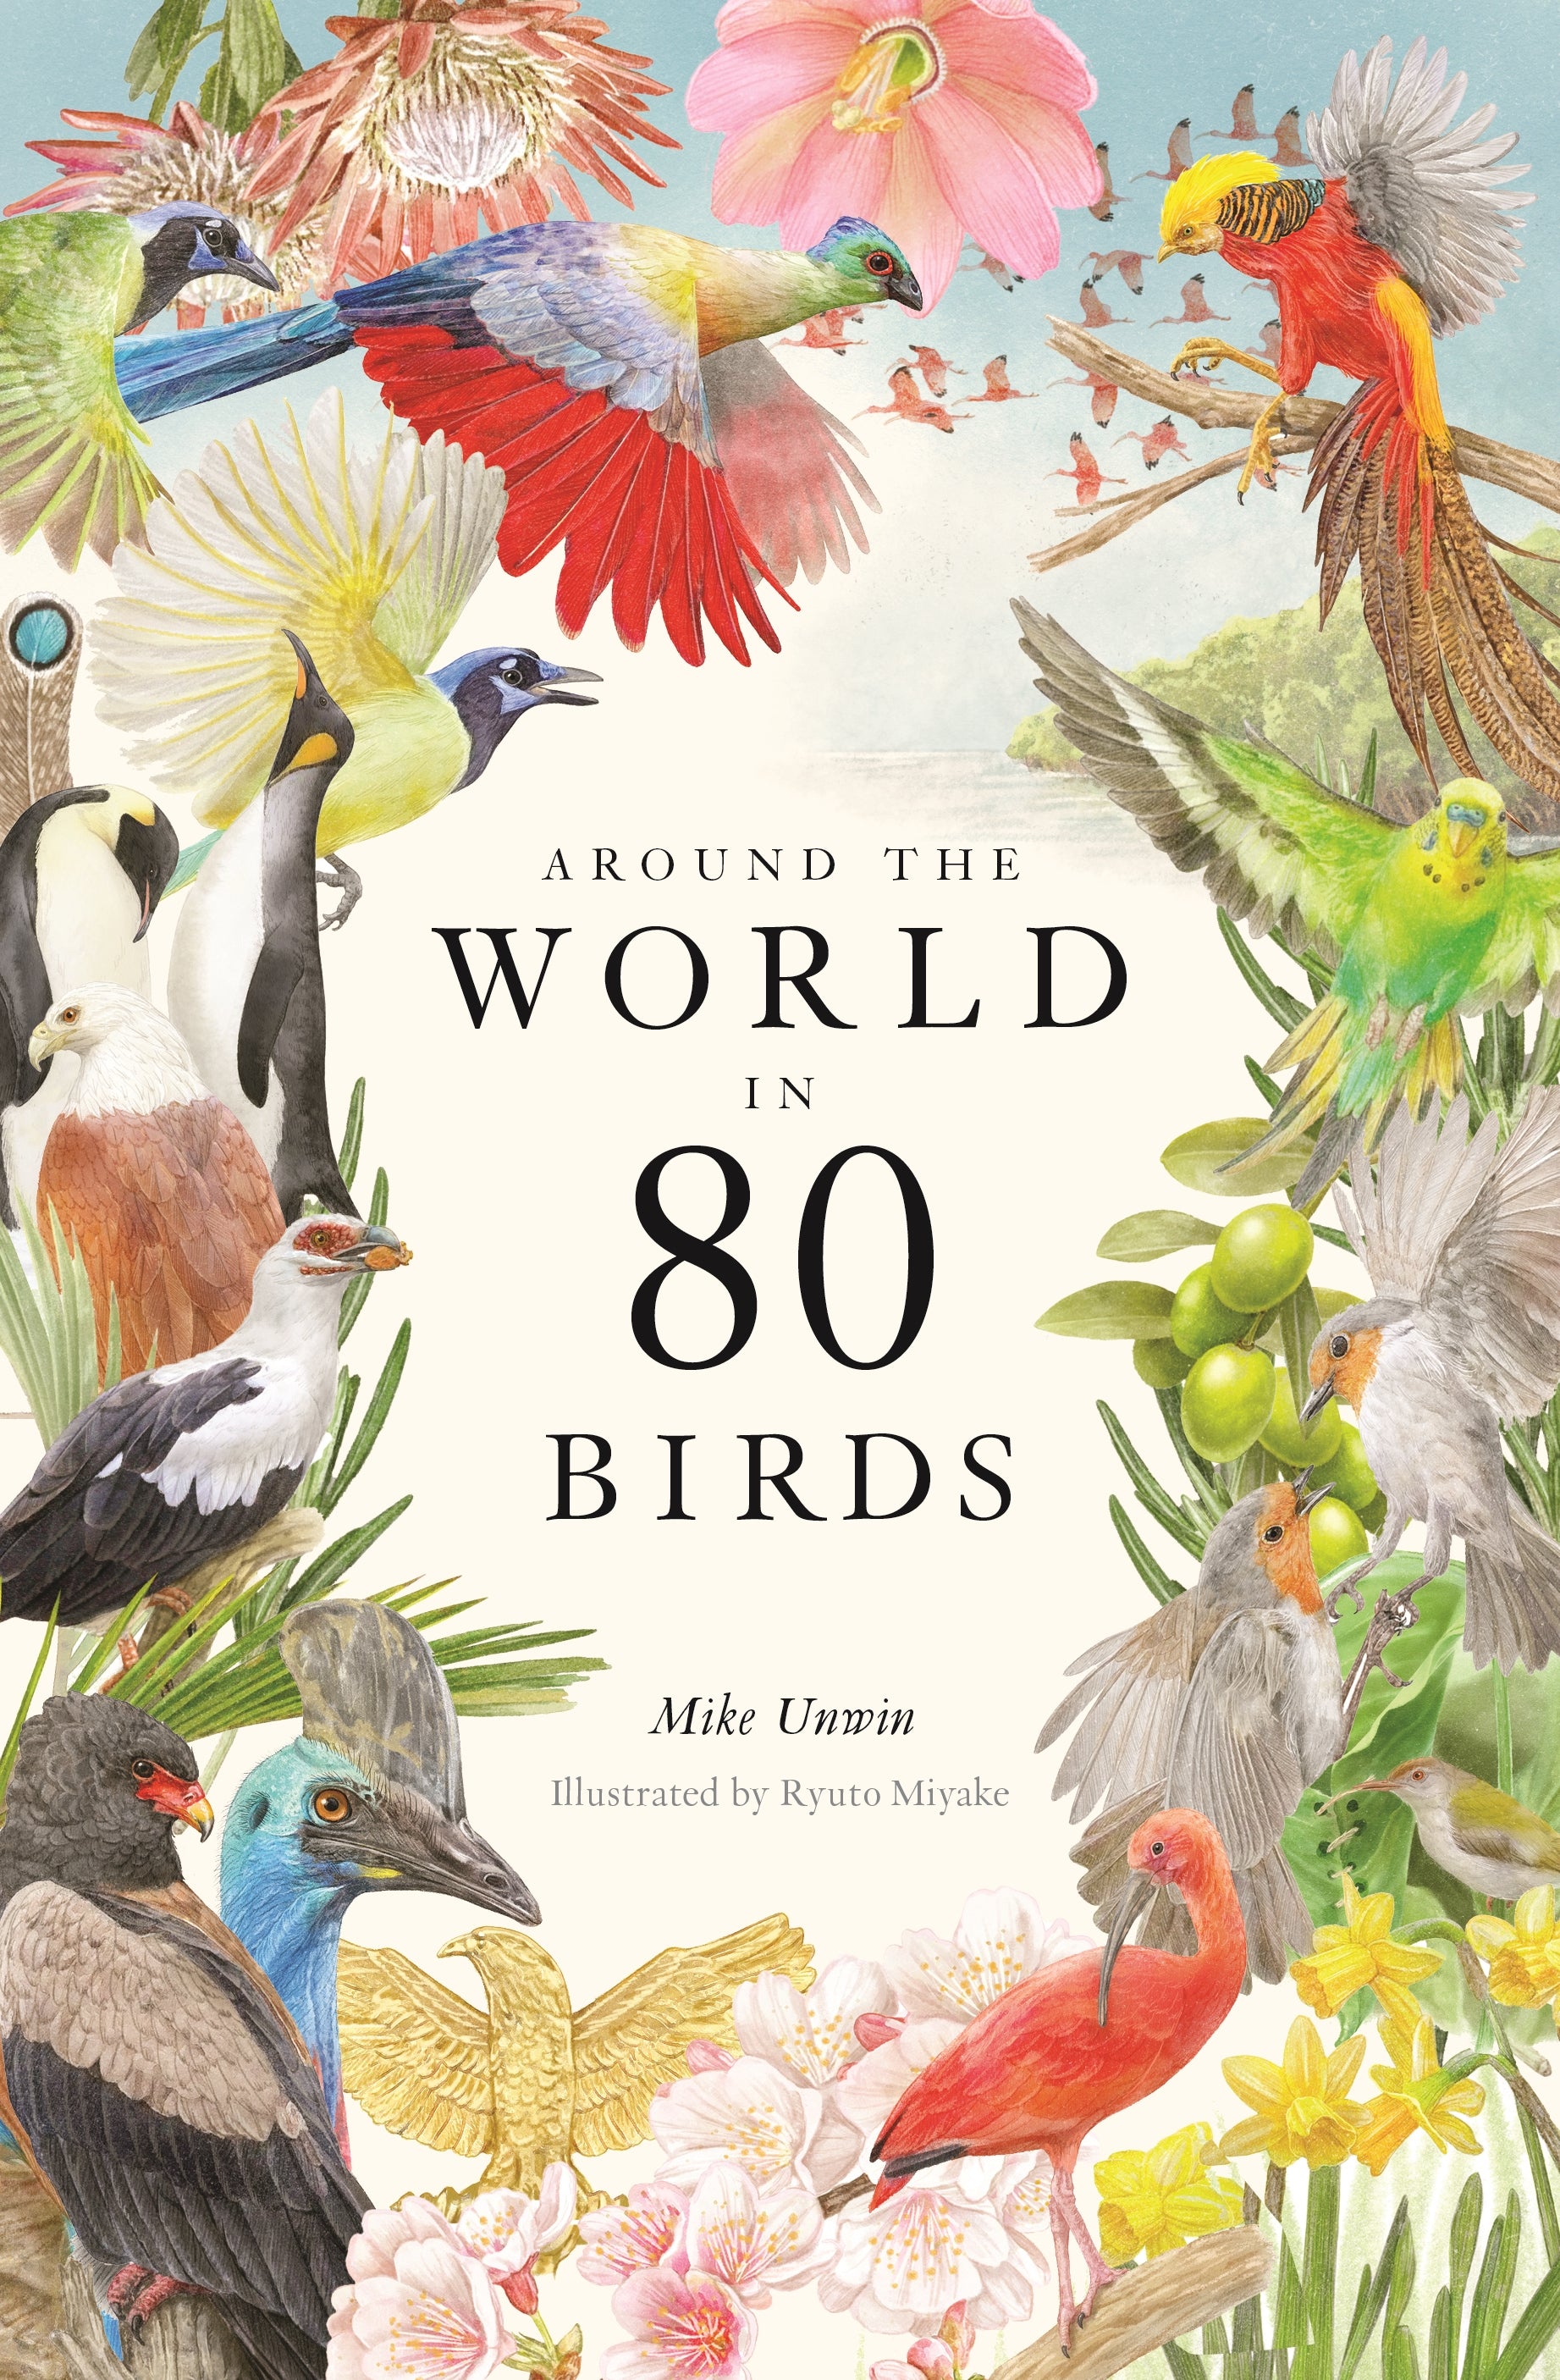 Around the World in 80 Birds by Ryuto Miyake, Mike Unwin